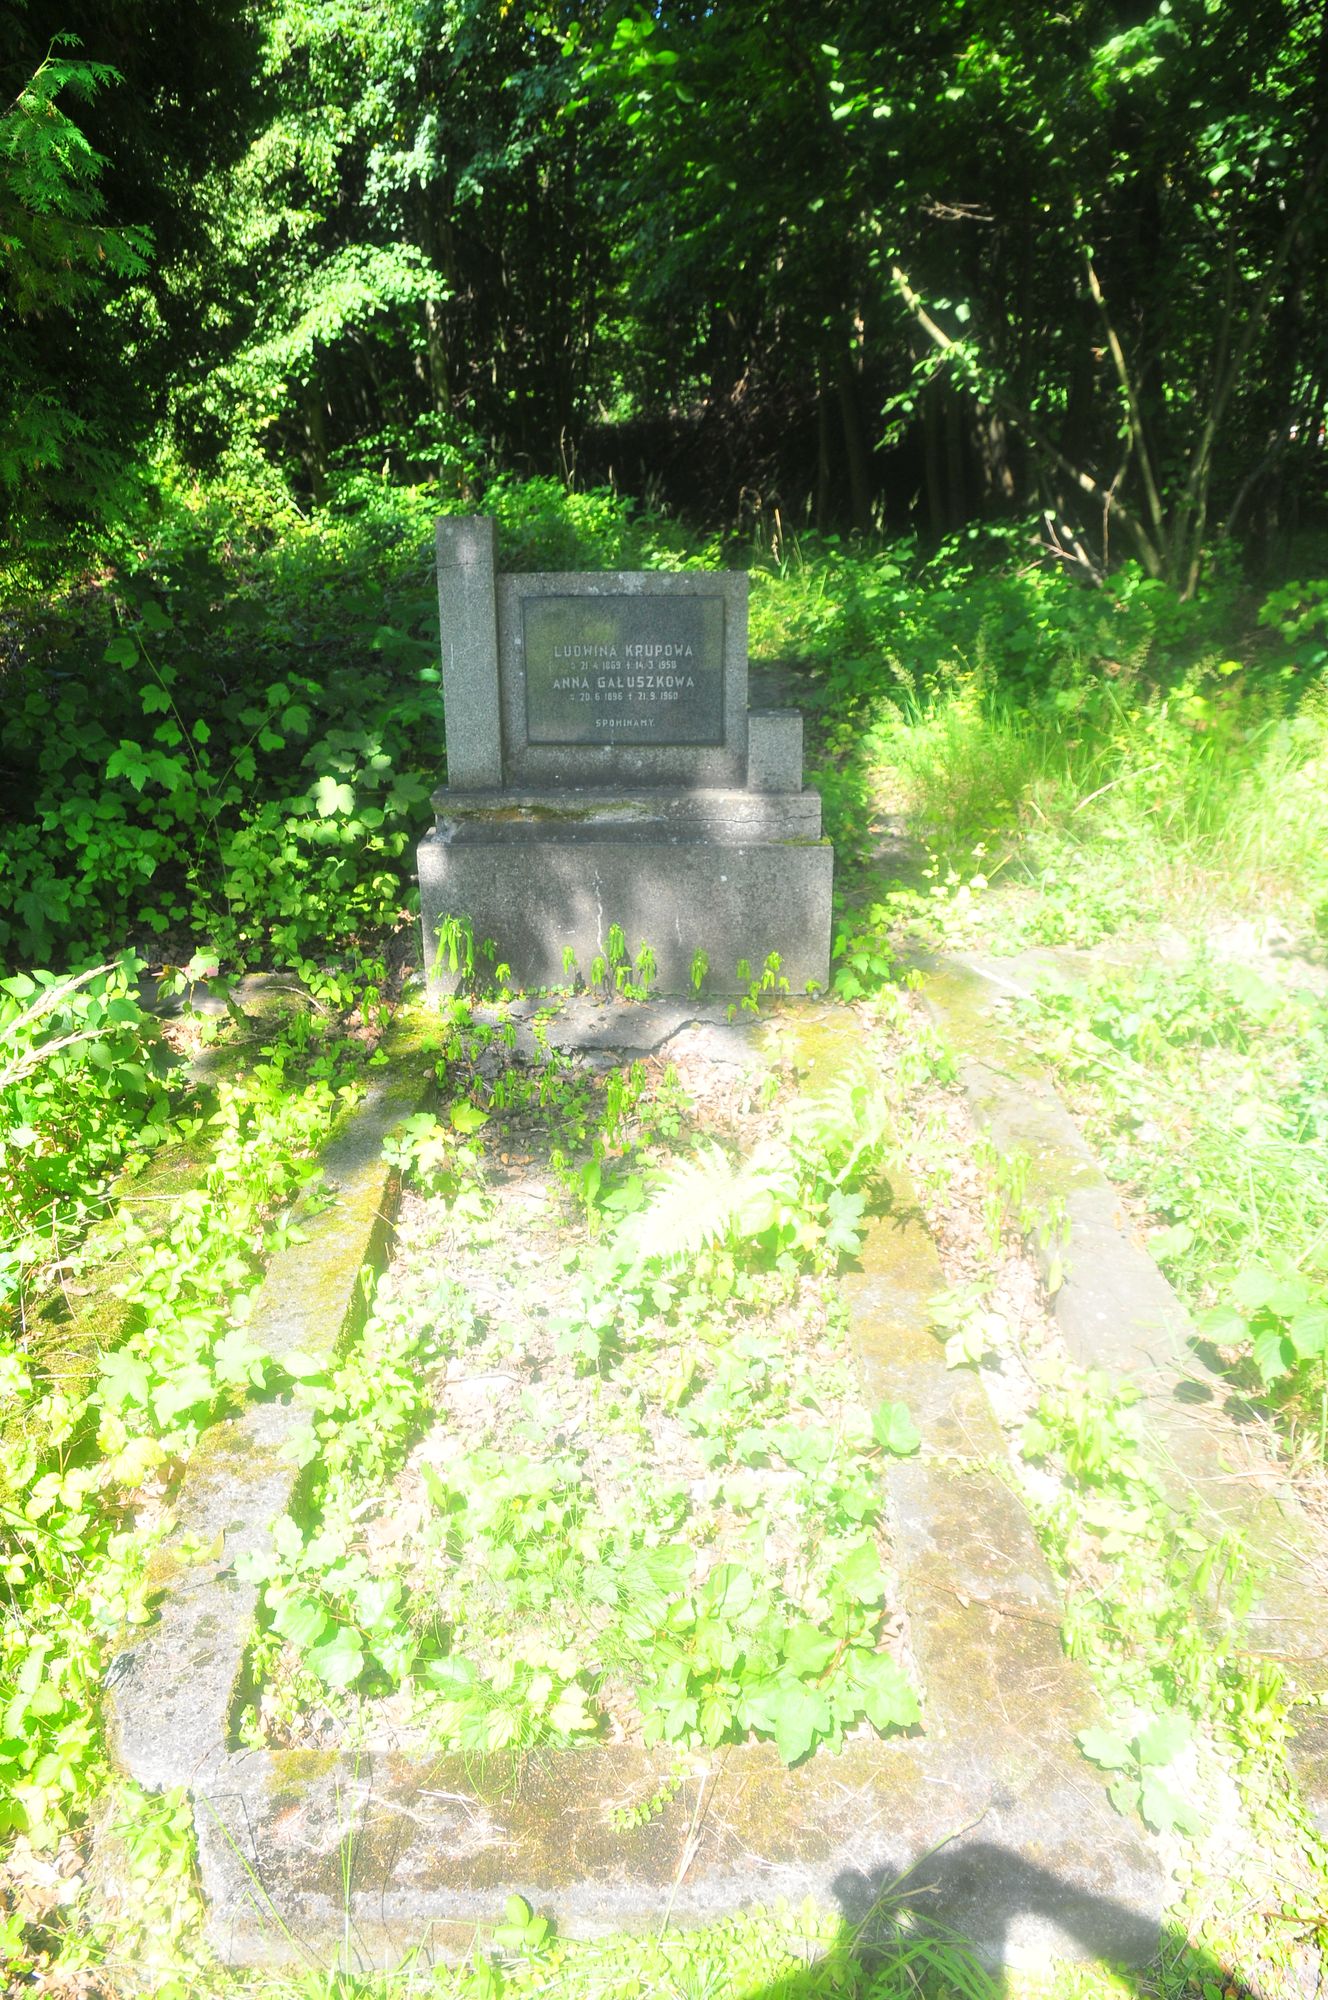 Tombstone of Ludwina Krupowa, and Anna Galuszkowa